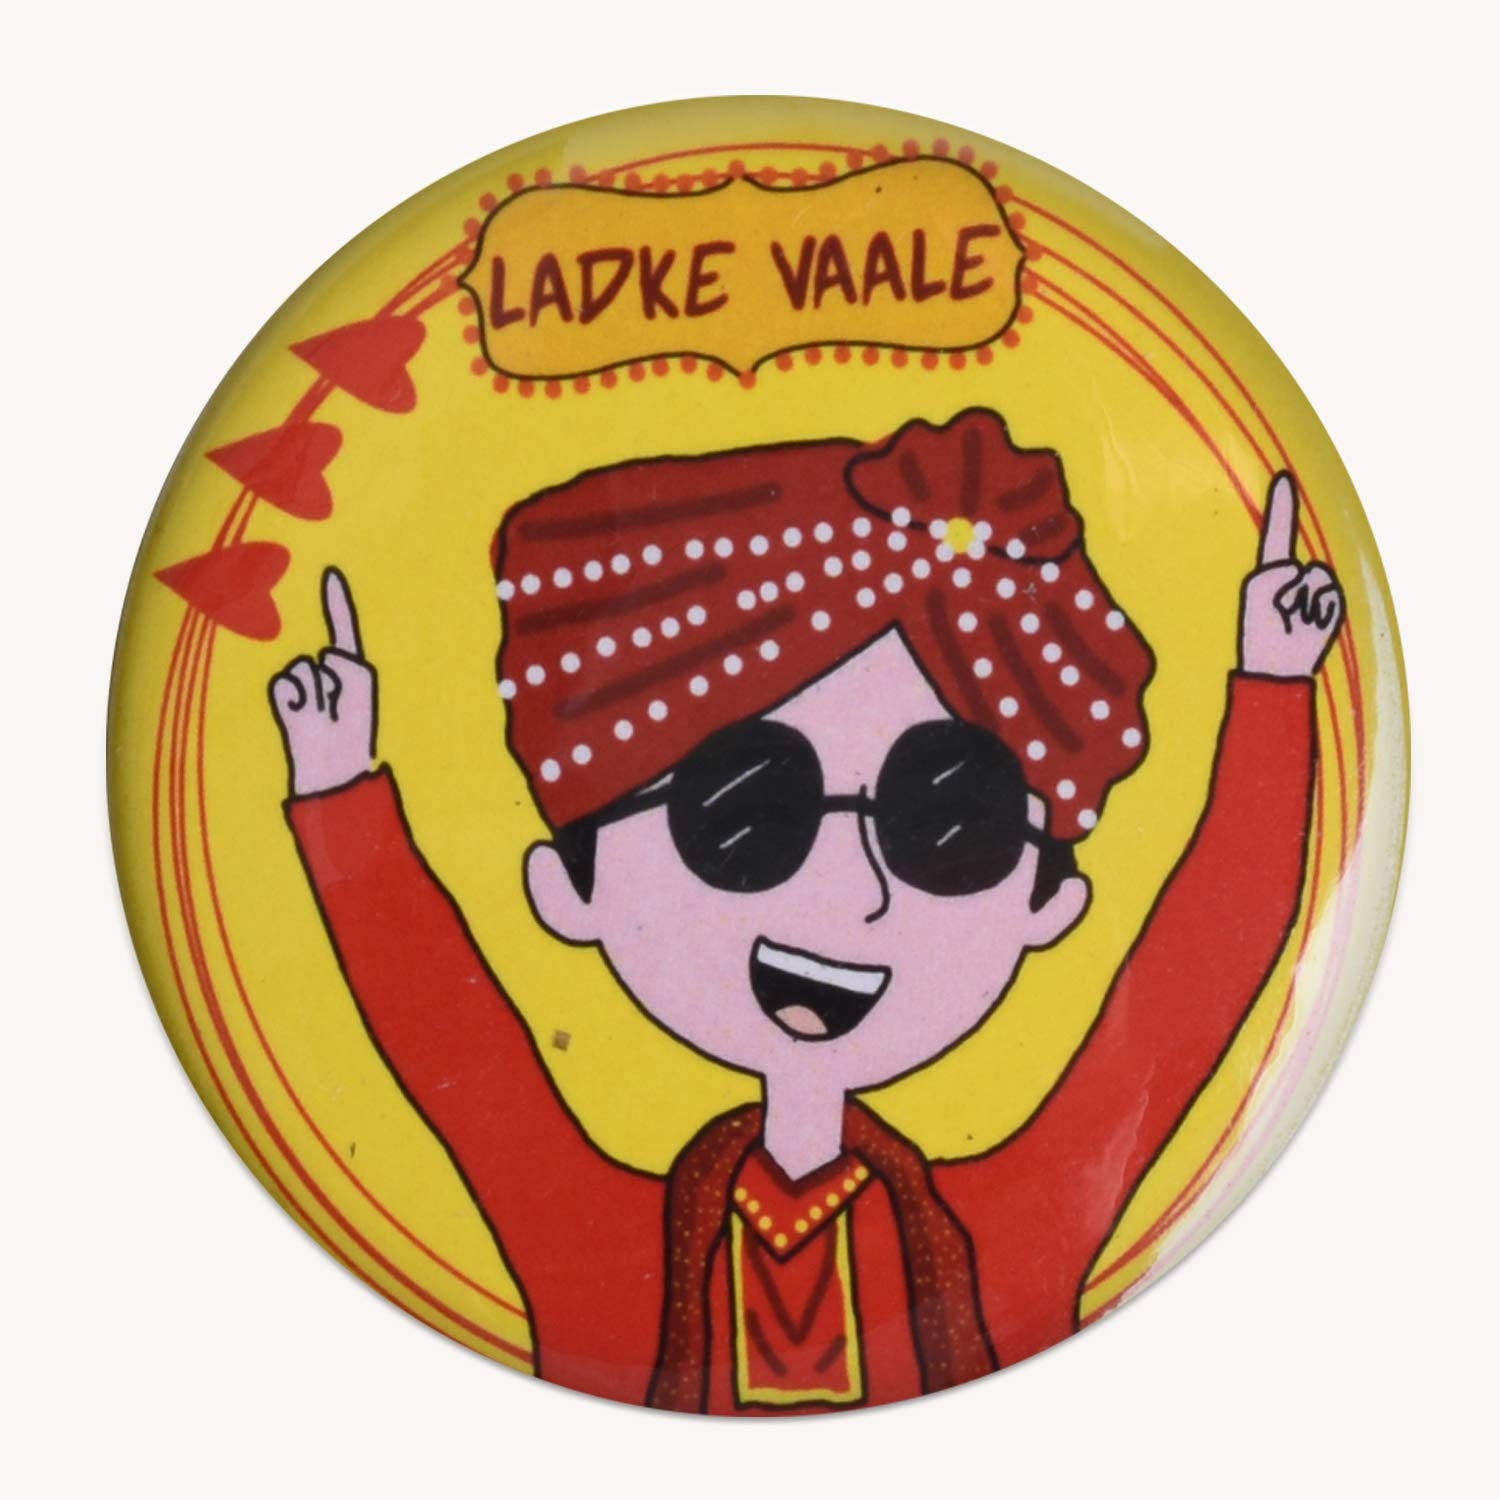 100 Pcs Ladke Wale Badges Shaadi Giveaways Wedding Gift Item - Etsy Canada